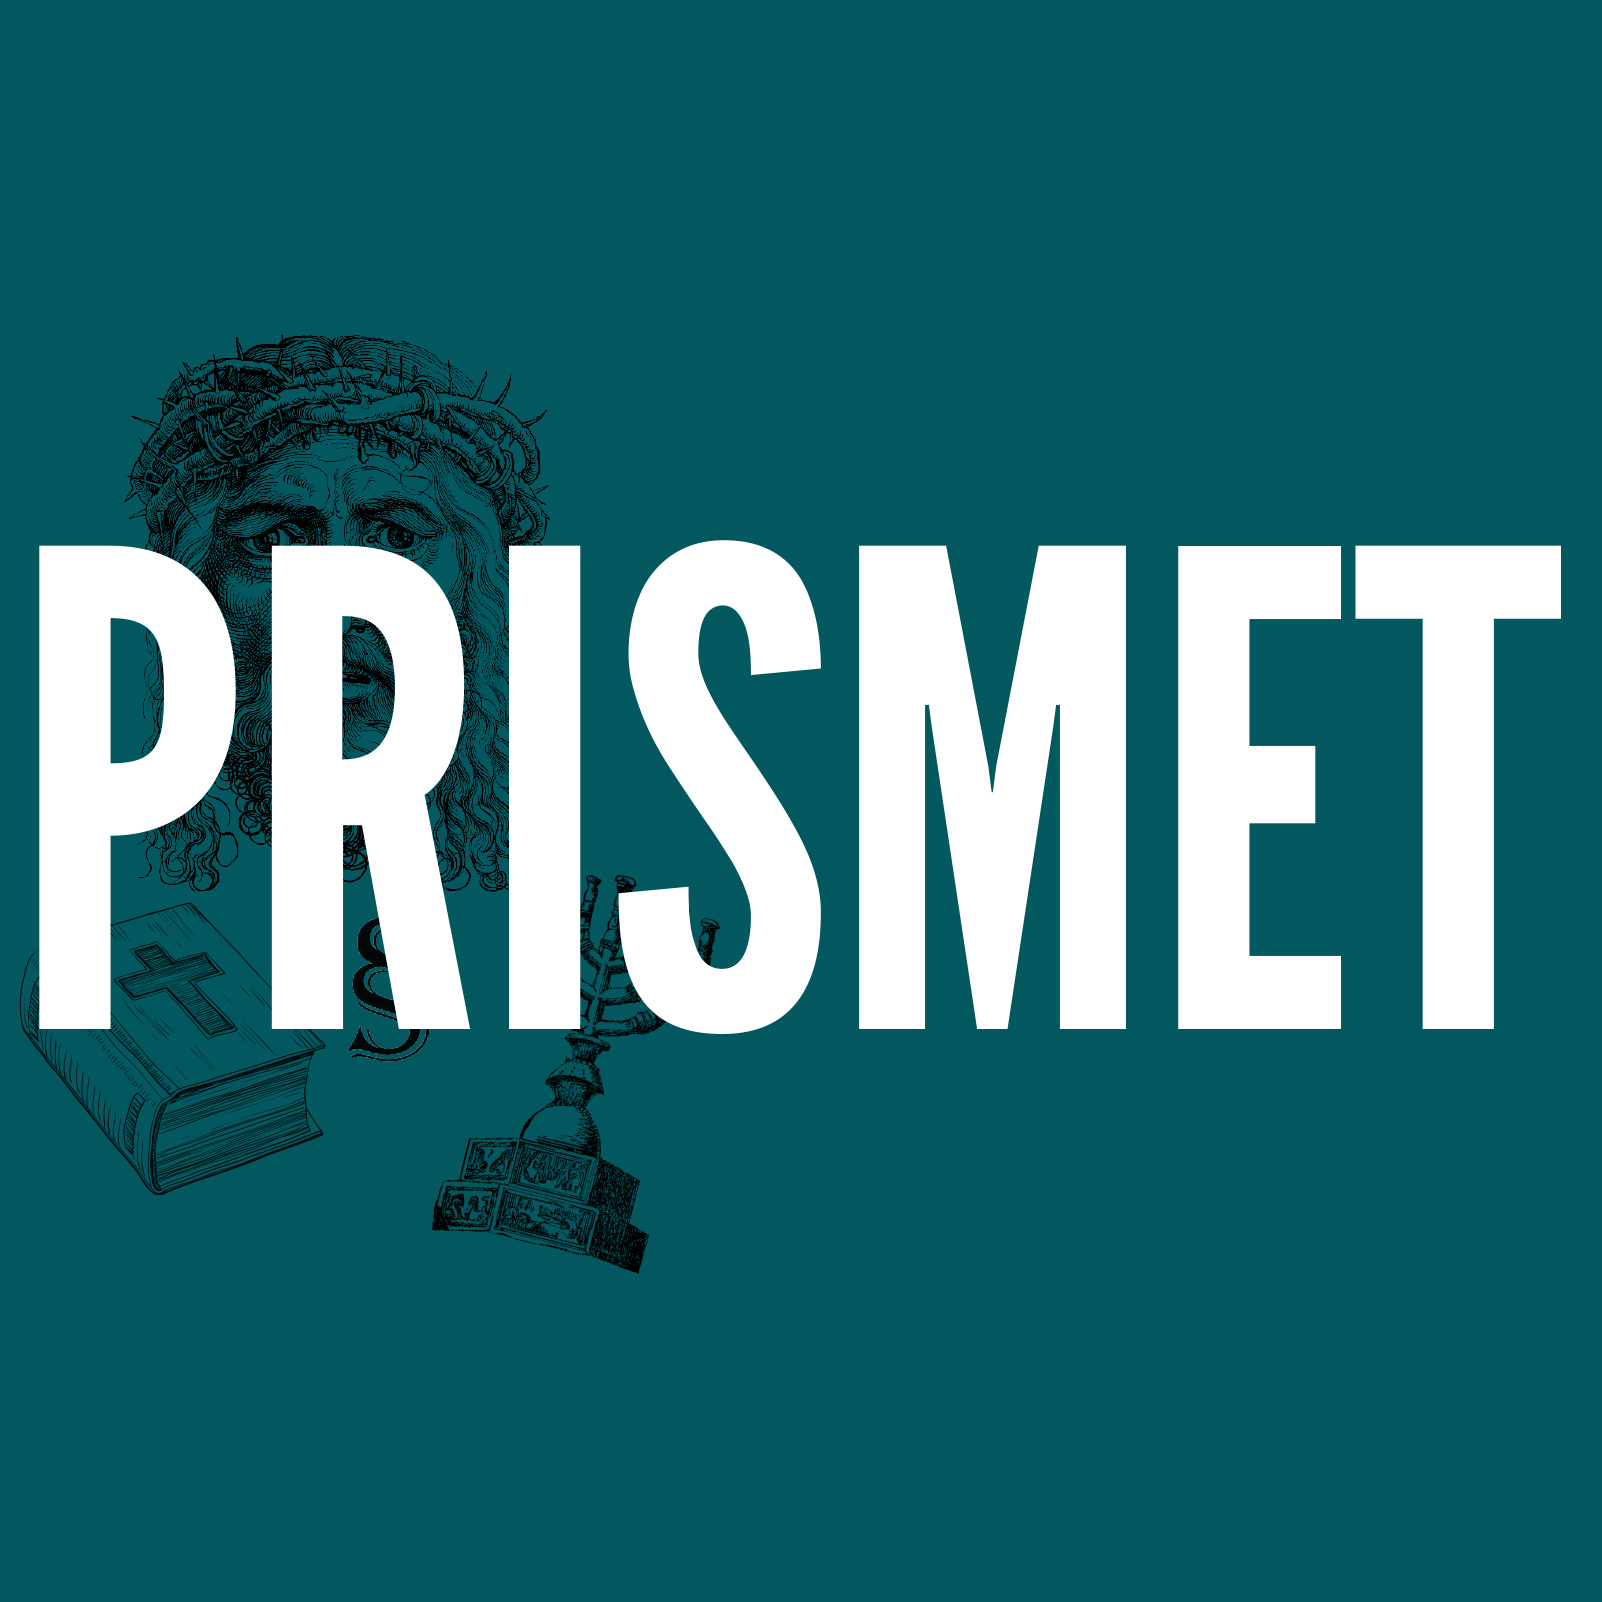 Prismet logo